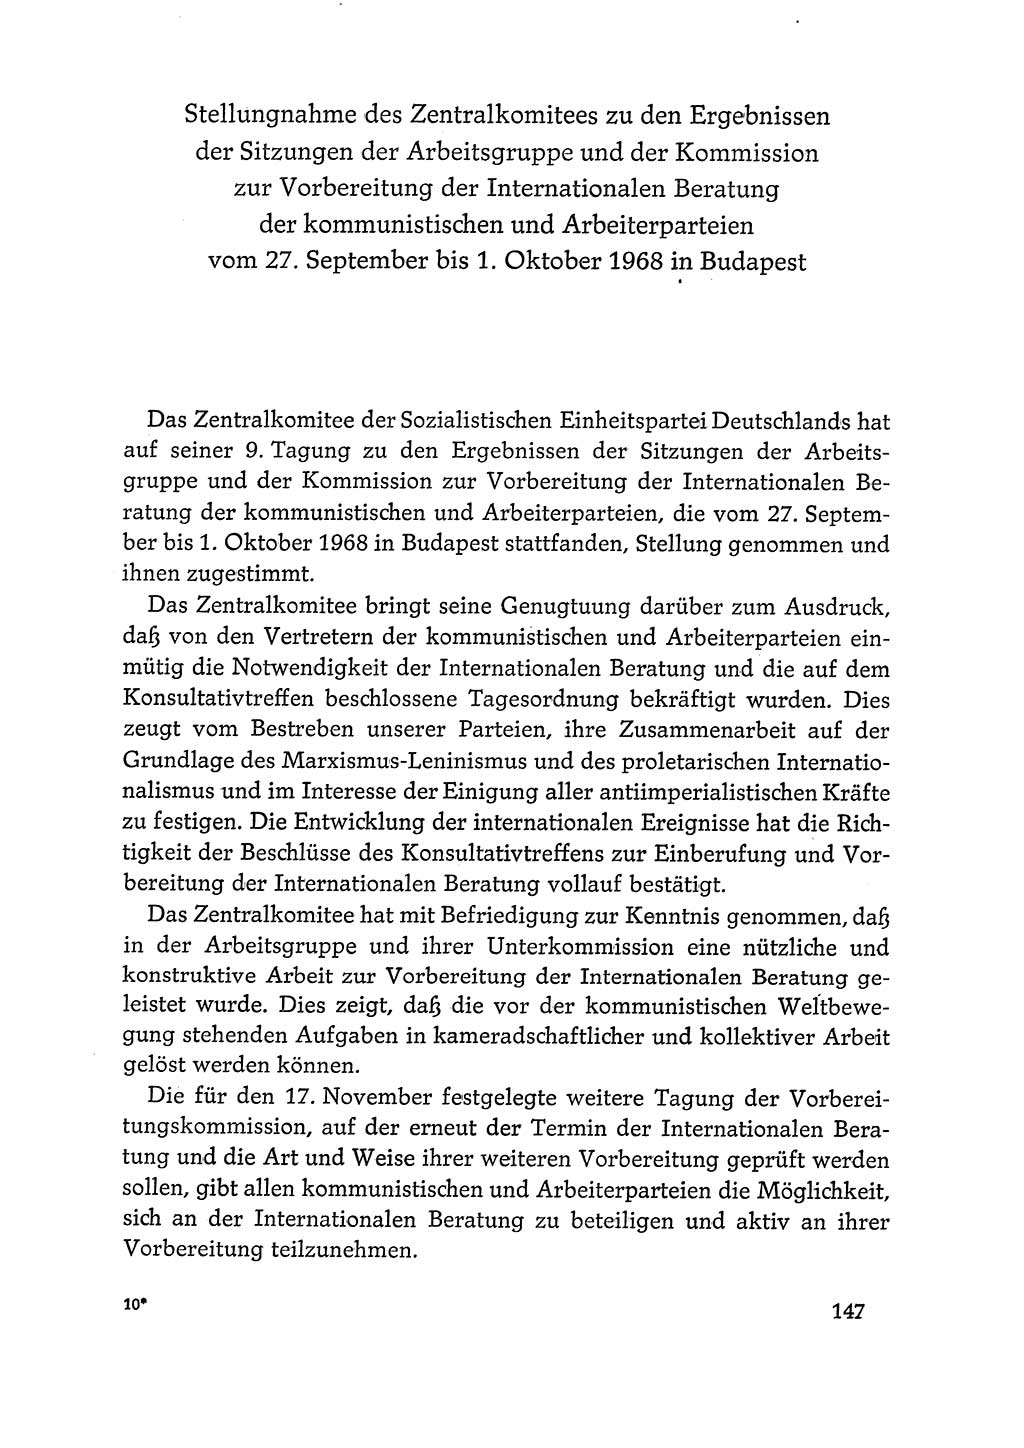 Dokumente der Sozialistischen Einheitspartei Deutschlands (SED) [Deutsche Demokratische Republik (DDR)] 1968-1969, Seite 147 (Dok. SED DDR 1968-1969, S. 147)